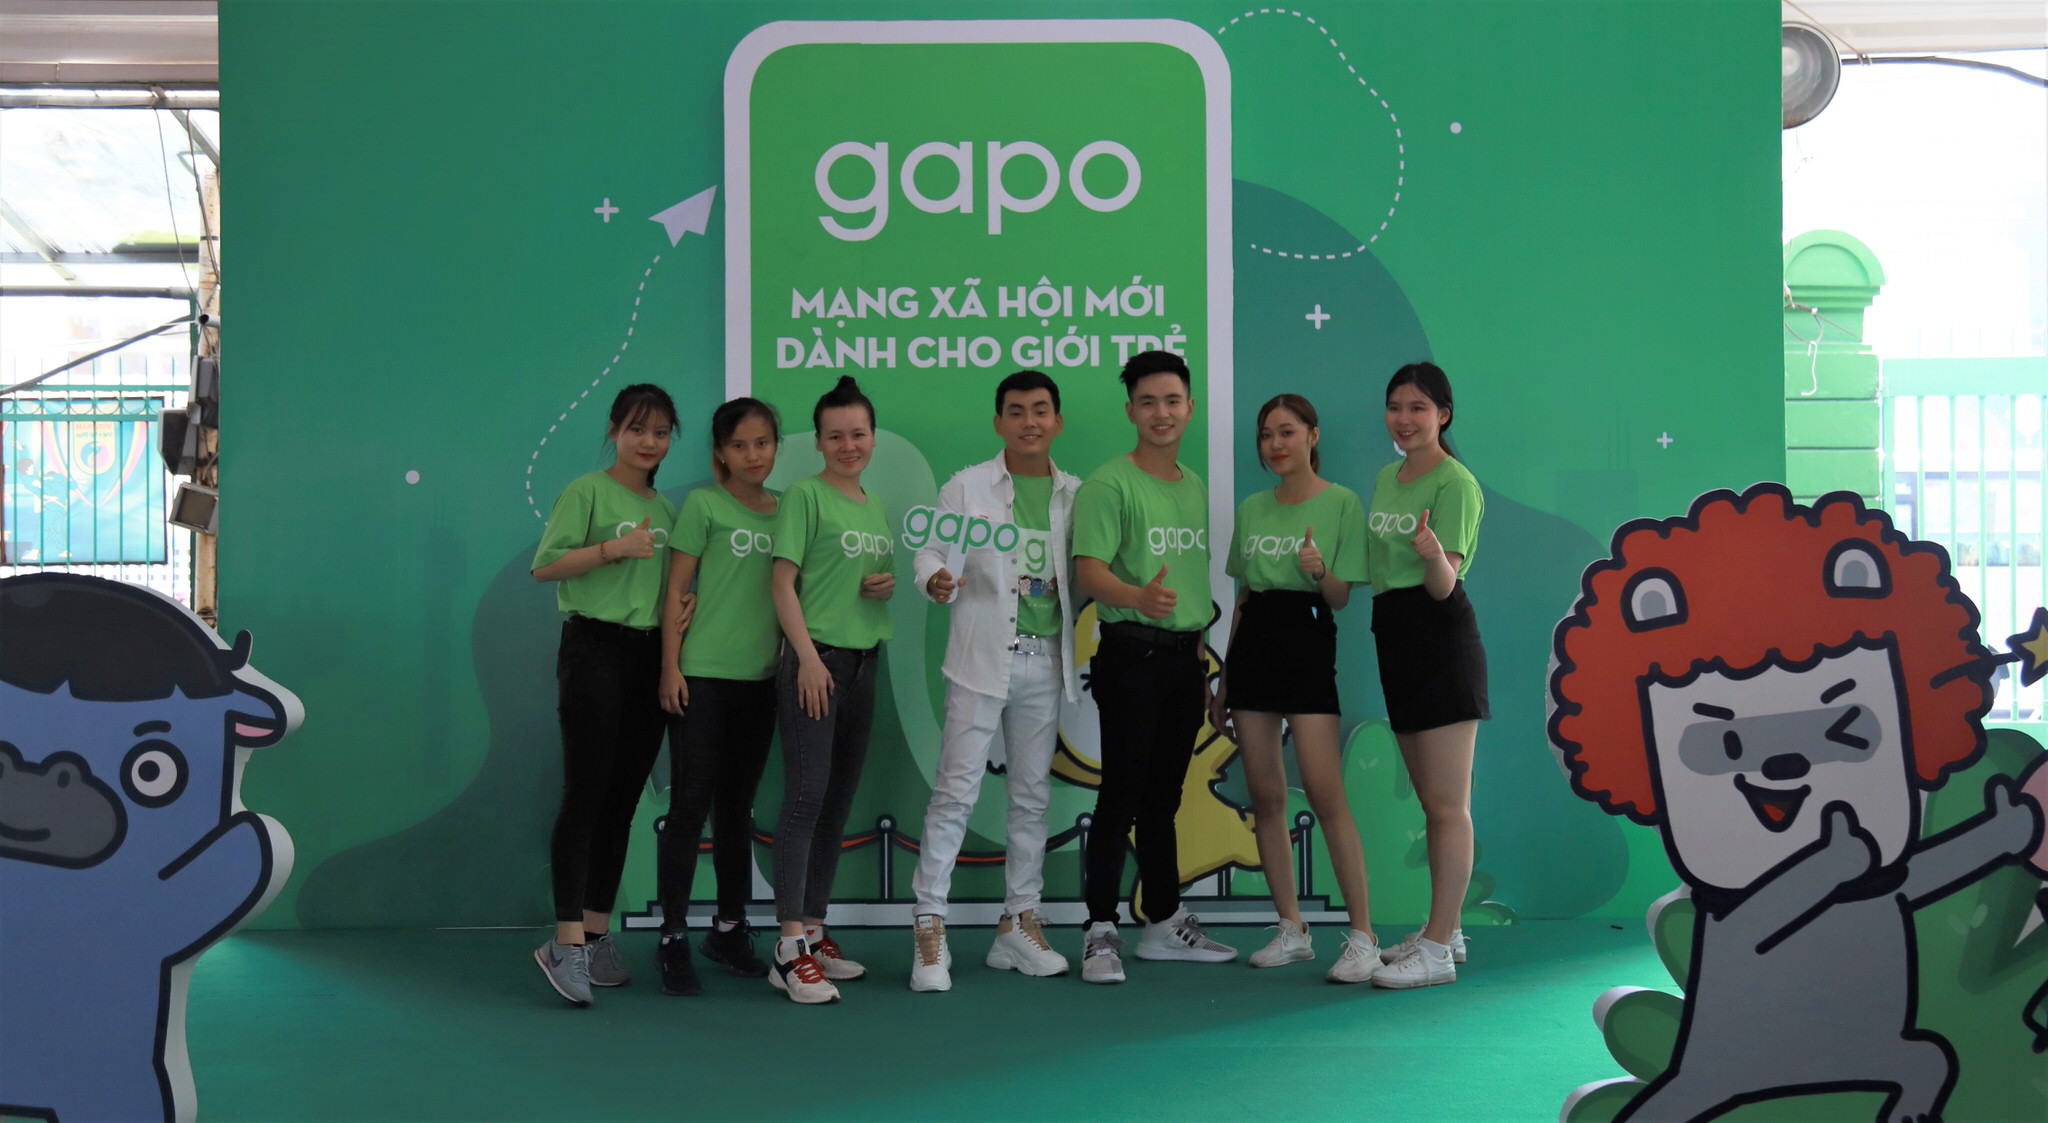 Bắt tay Gapo, Đại hội 360mobi thu hút hơn 70,000 lượt game thủ xếp hàng nhận "đặc quyền kép" từ Gapo